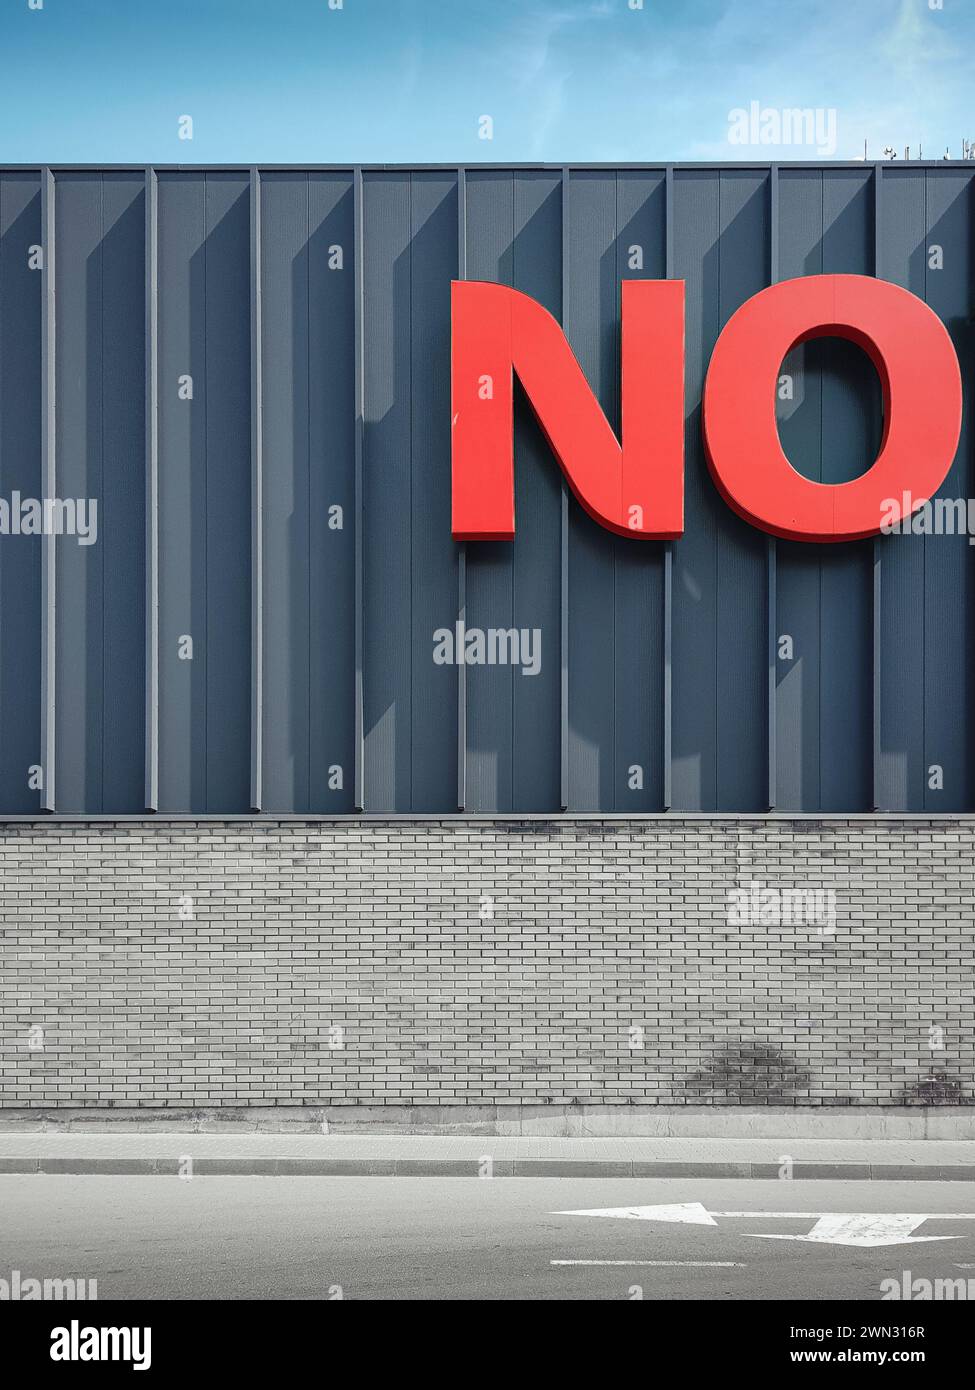 NEIN – negative Antwort. Große rote Buchstaben an der Wand des modernen Gebäudes an einem sonnigen Tag. Stockfoto